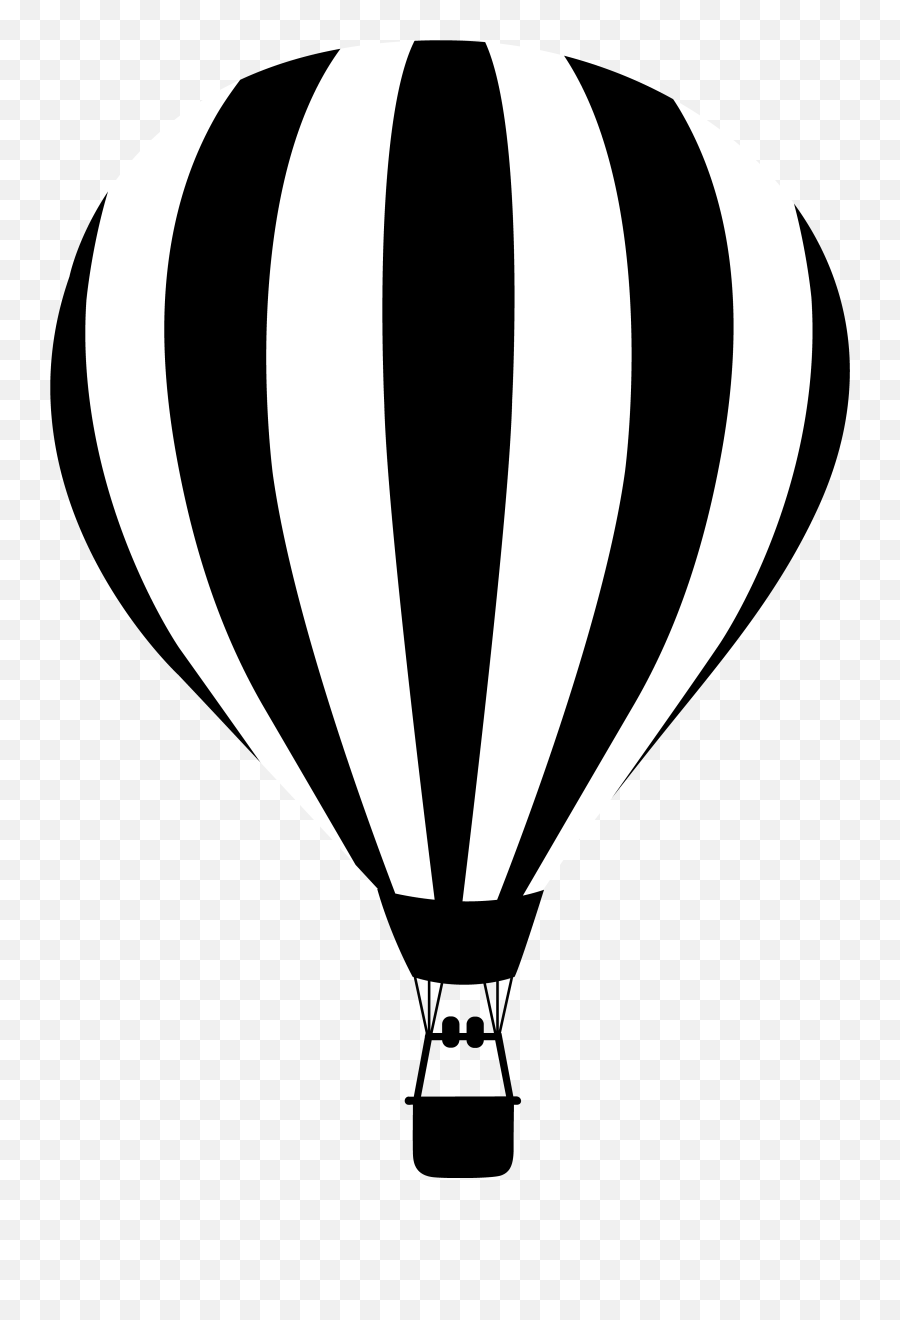 Hot Air Balloon Clipart Black And White - Air Balloon Silhouette Png Emoji,Hot Air Balloon Clipart